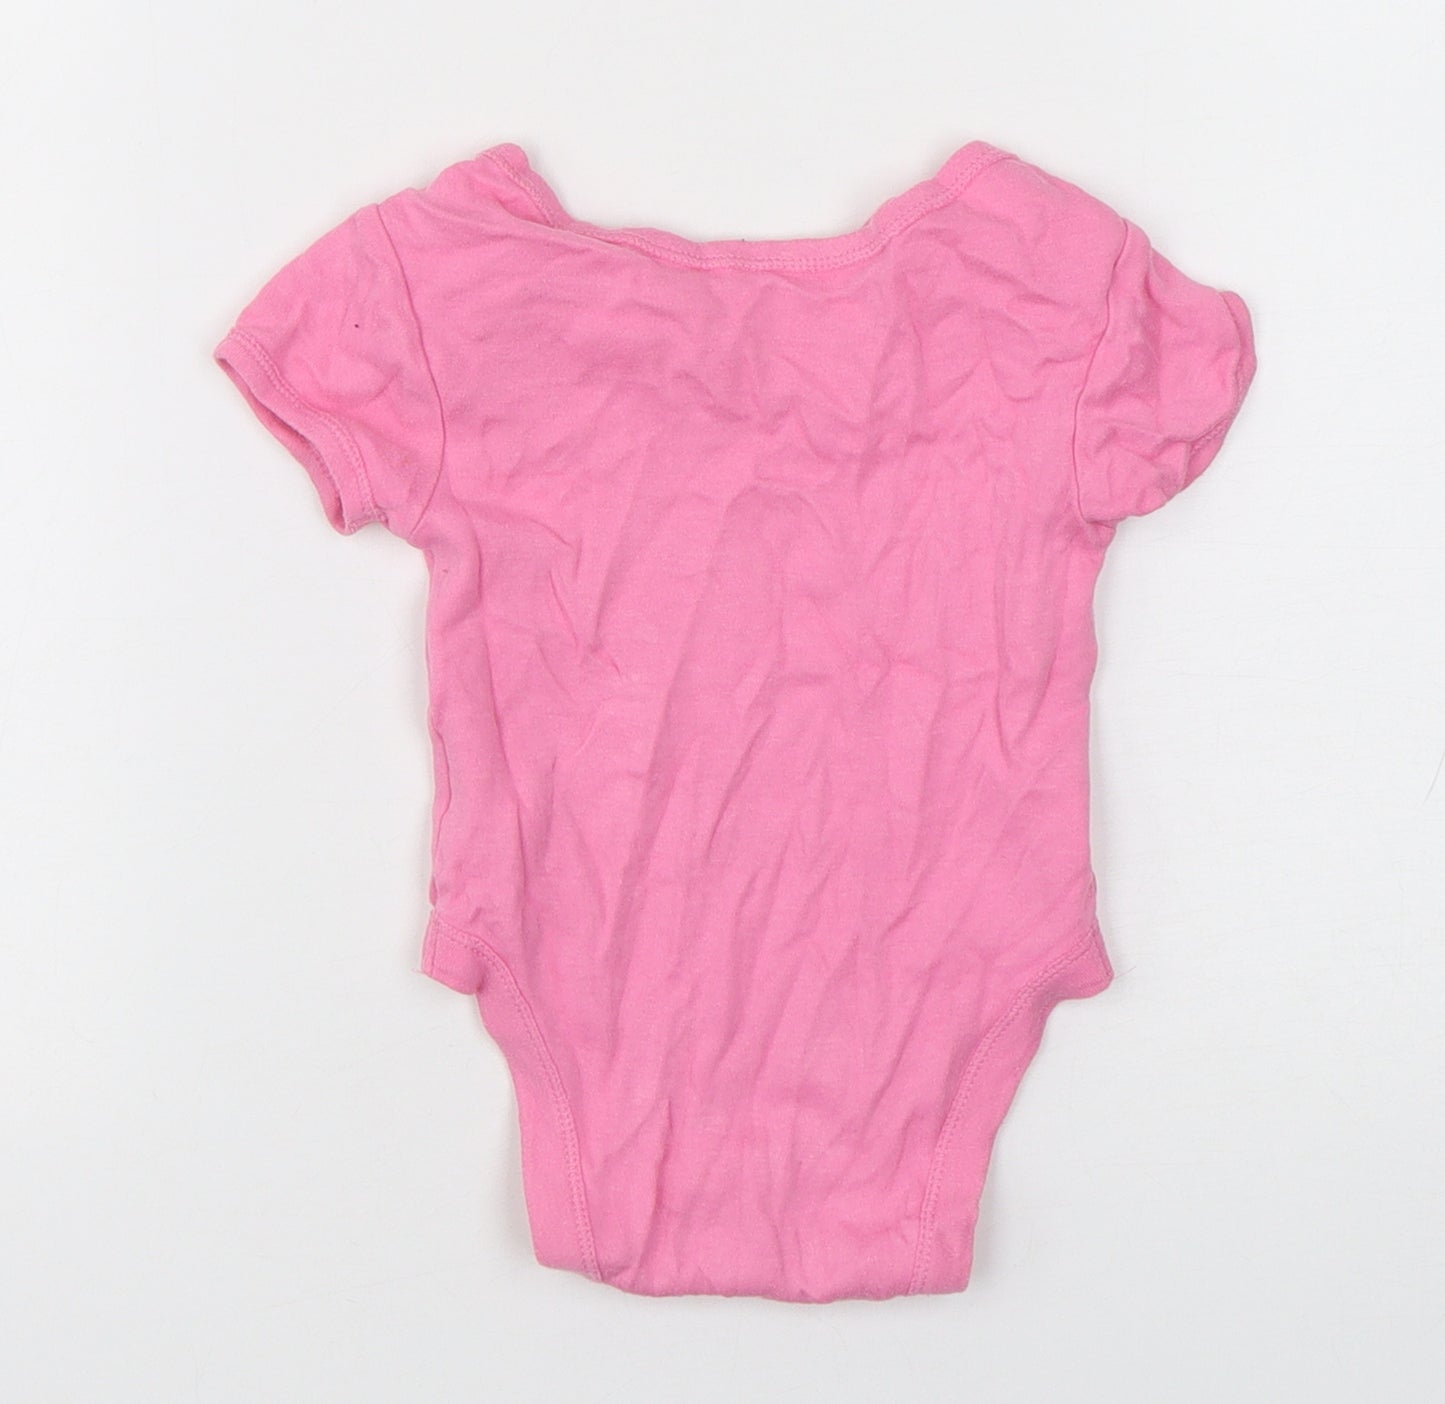 Primark Girls Pink  Cotton Babygrow One-Piece Size 6-9 Months  Snap